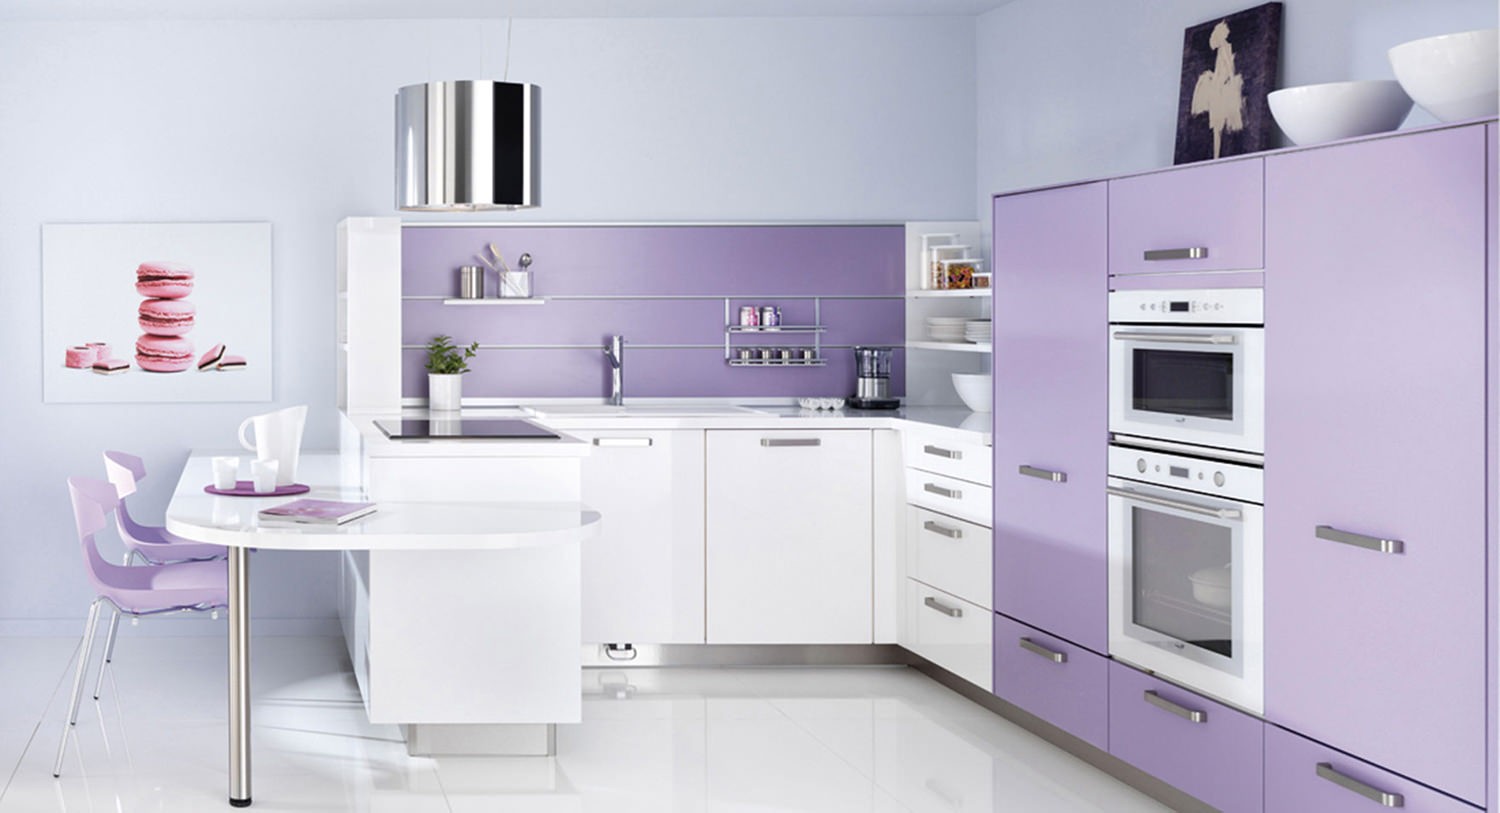 Нежно-фиолетовая кухня